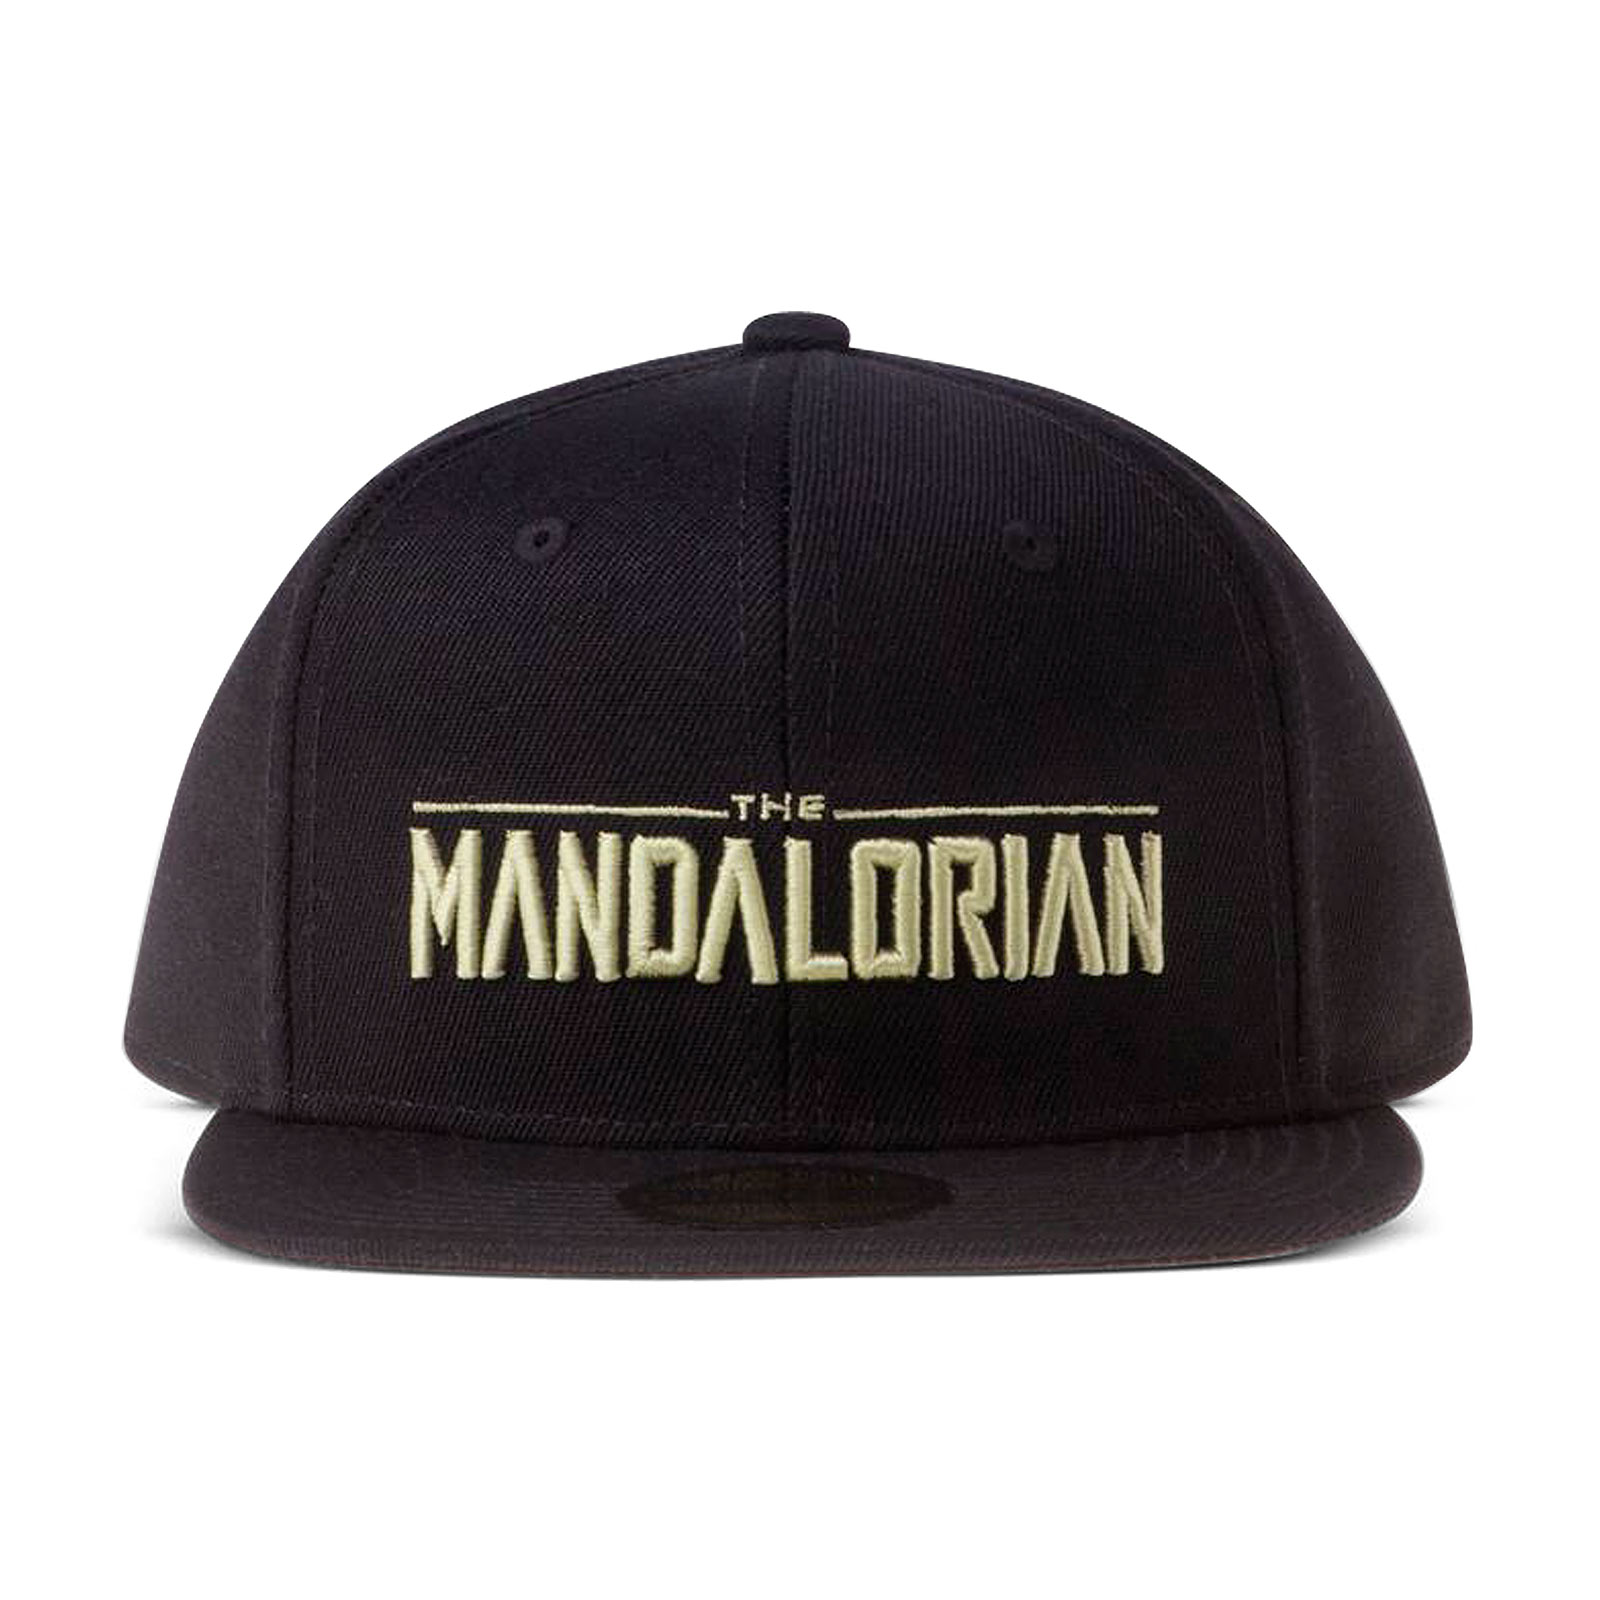 The Mandalorian Logo Snapback Cap Black - Star Wars